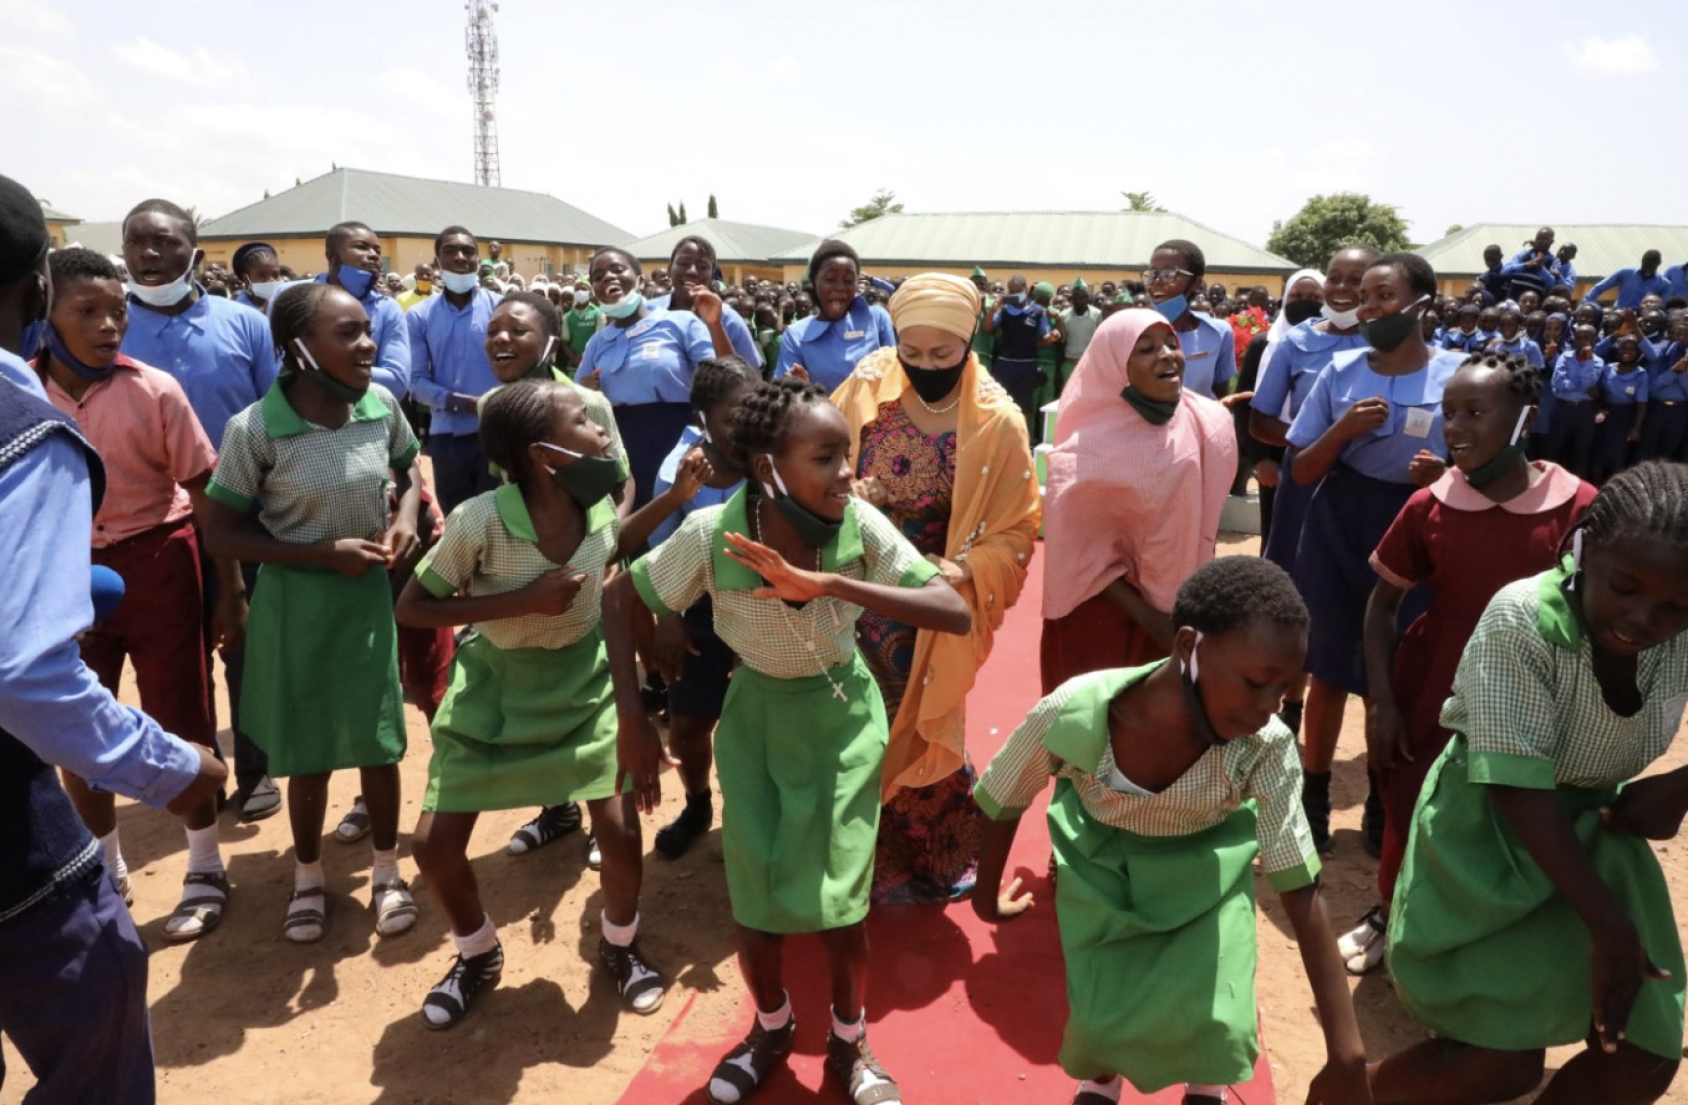 Des jeunes filles vêtues d'un uniforme scolaire vert sont rassemblées à l'extérieur d'une salle de classe et dansent, entourées d'un autre groupe d'élèves en uniforme bleu. Amina Mohammed, la Vice-Secrétaire générale de l'ONU, accompage les jeunes filles.